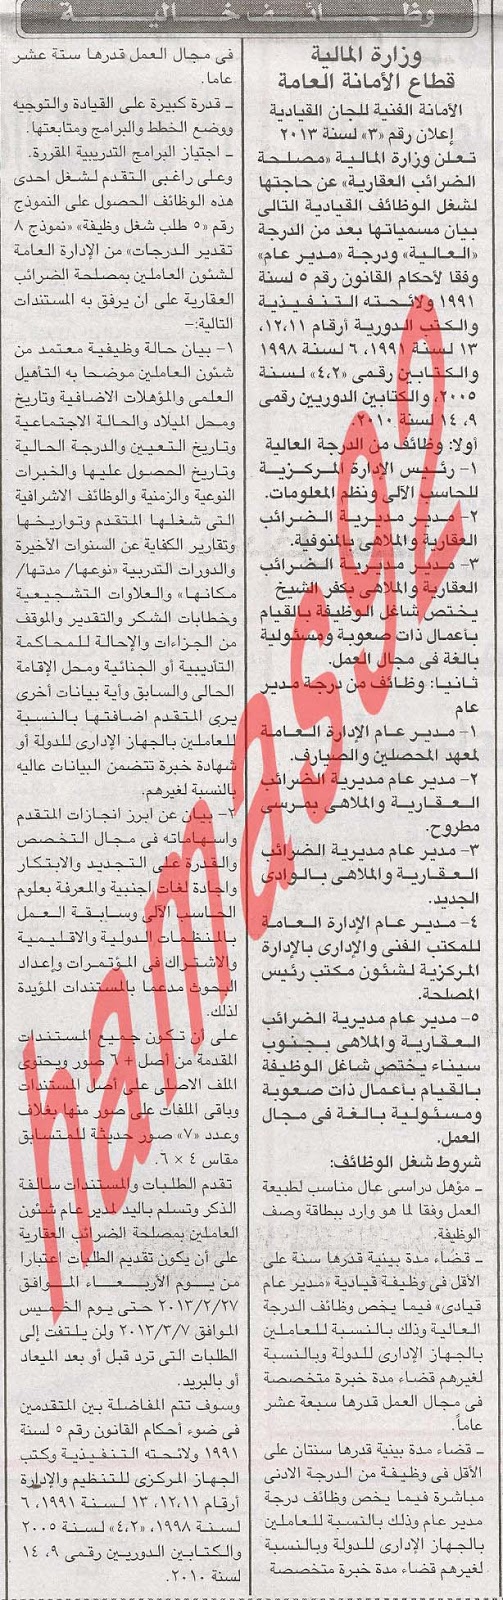 وظائف خالية من جريدة الاخبار المصرية اليوم الاربعاء 27/2/2013 %D8%A7%D9%84%D8%A7%D8%AE%D8%A8%D8%A7%D8%B1+3